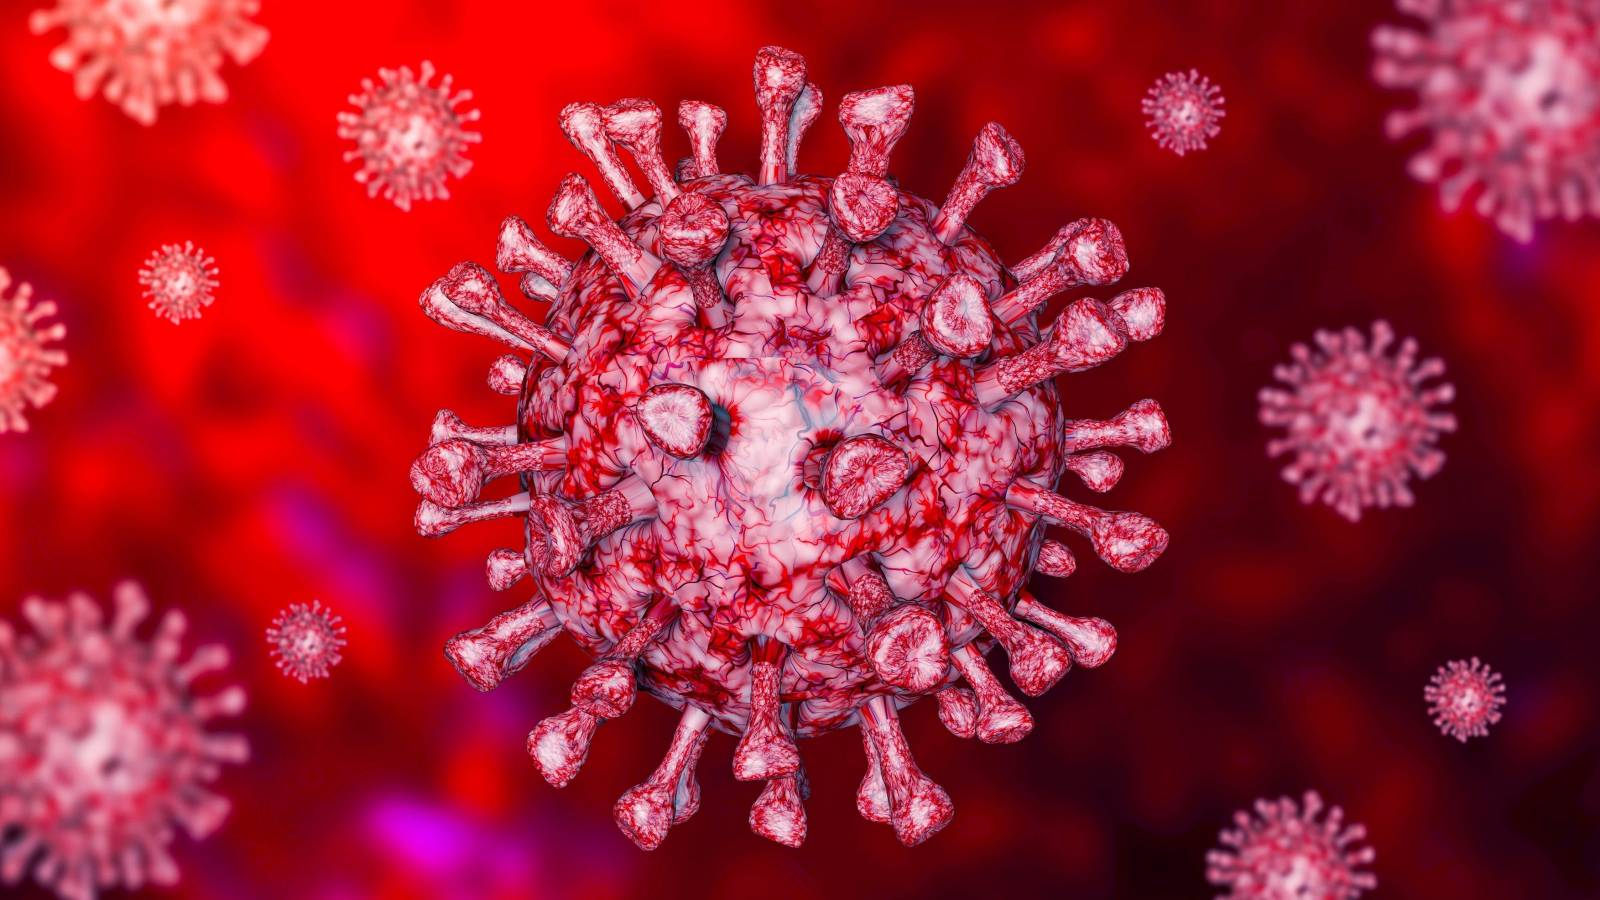 Koronavirus Romaniassa uusia tapauksia VIndecari 4. helmikuuta